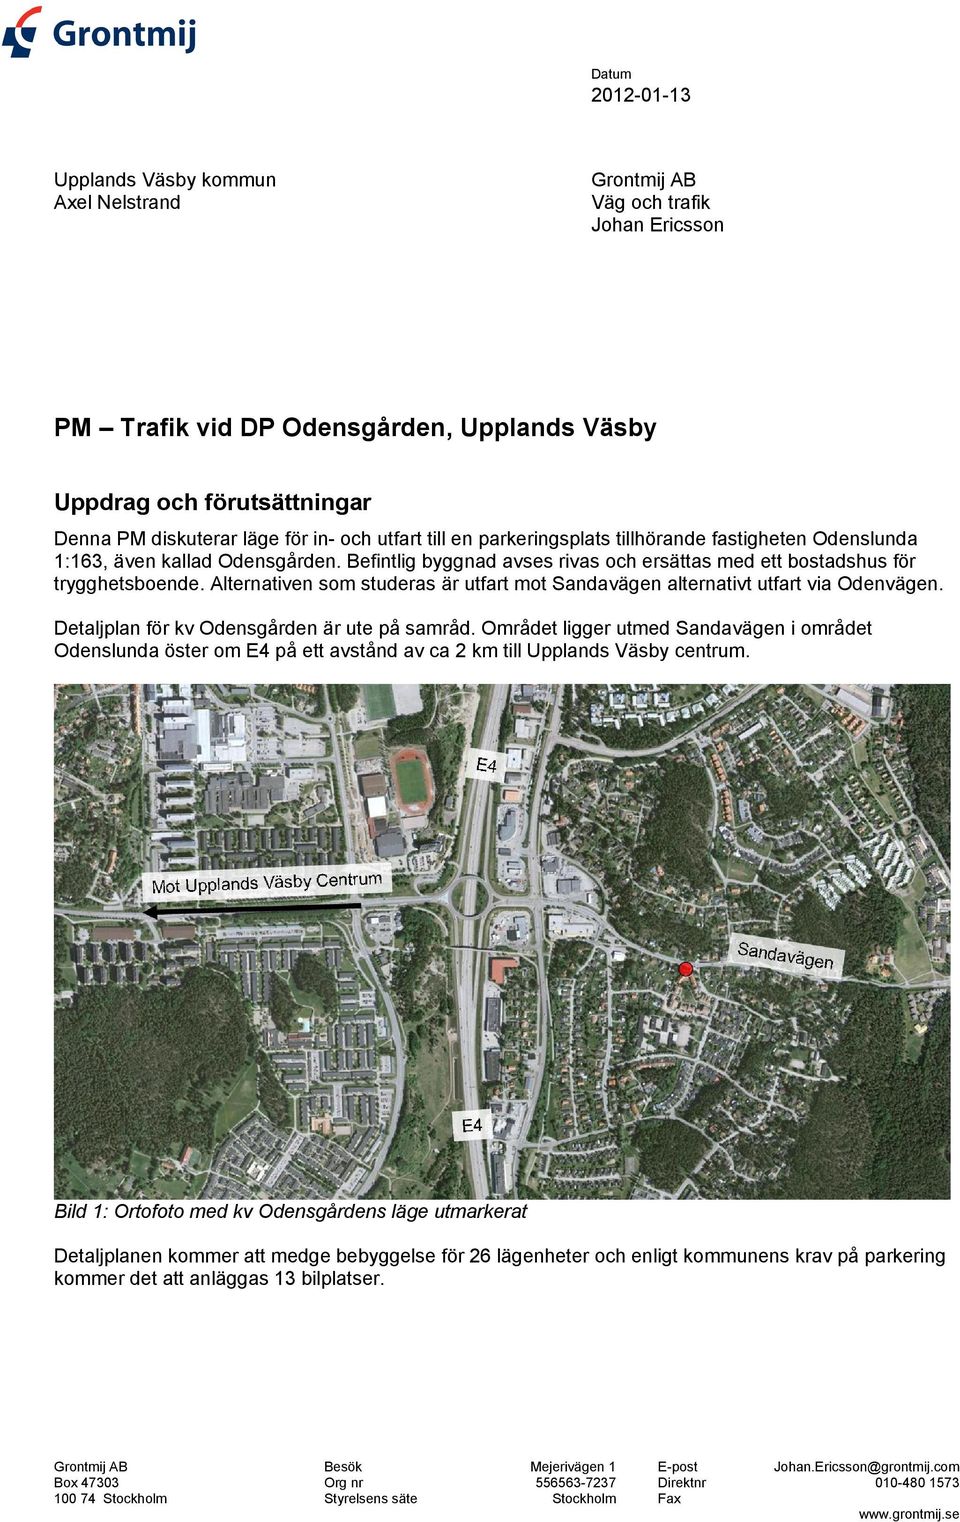 Alternativen som studeras är utfart mot Sandavägen alternativt utfart via Odenvägen. Detaljplan för kv Odensgården är ute på samråd.